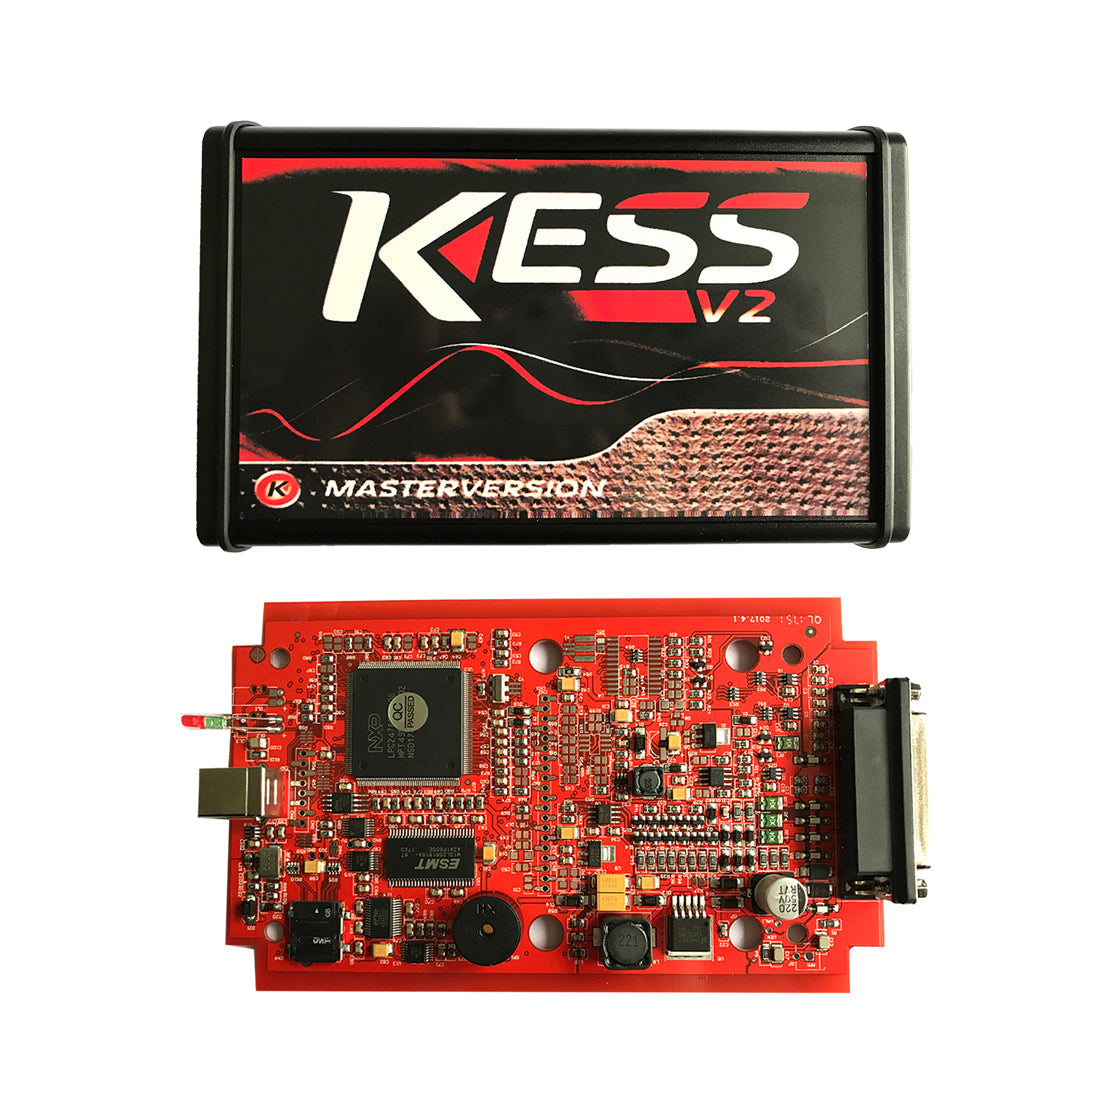 KESS Ksuite V2 Master Red PCB V5.017 Ksuite SW V2.80 EU Version No Token Limited Supports Online ECU Chip Tuning Tool